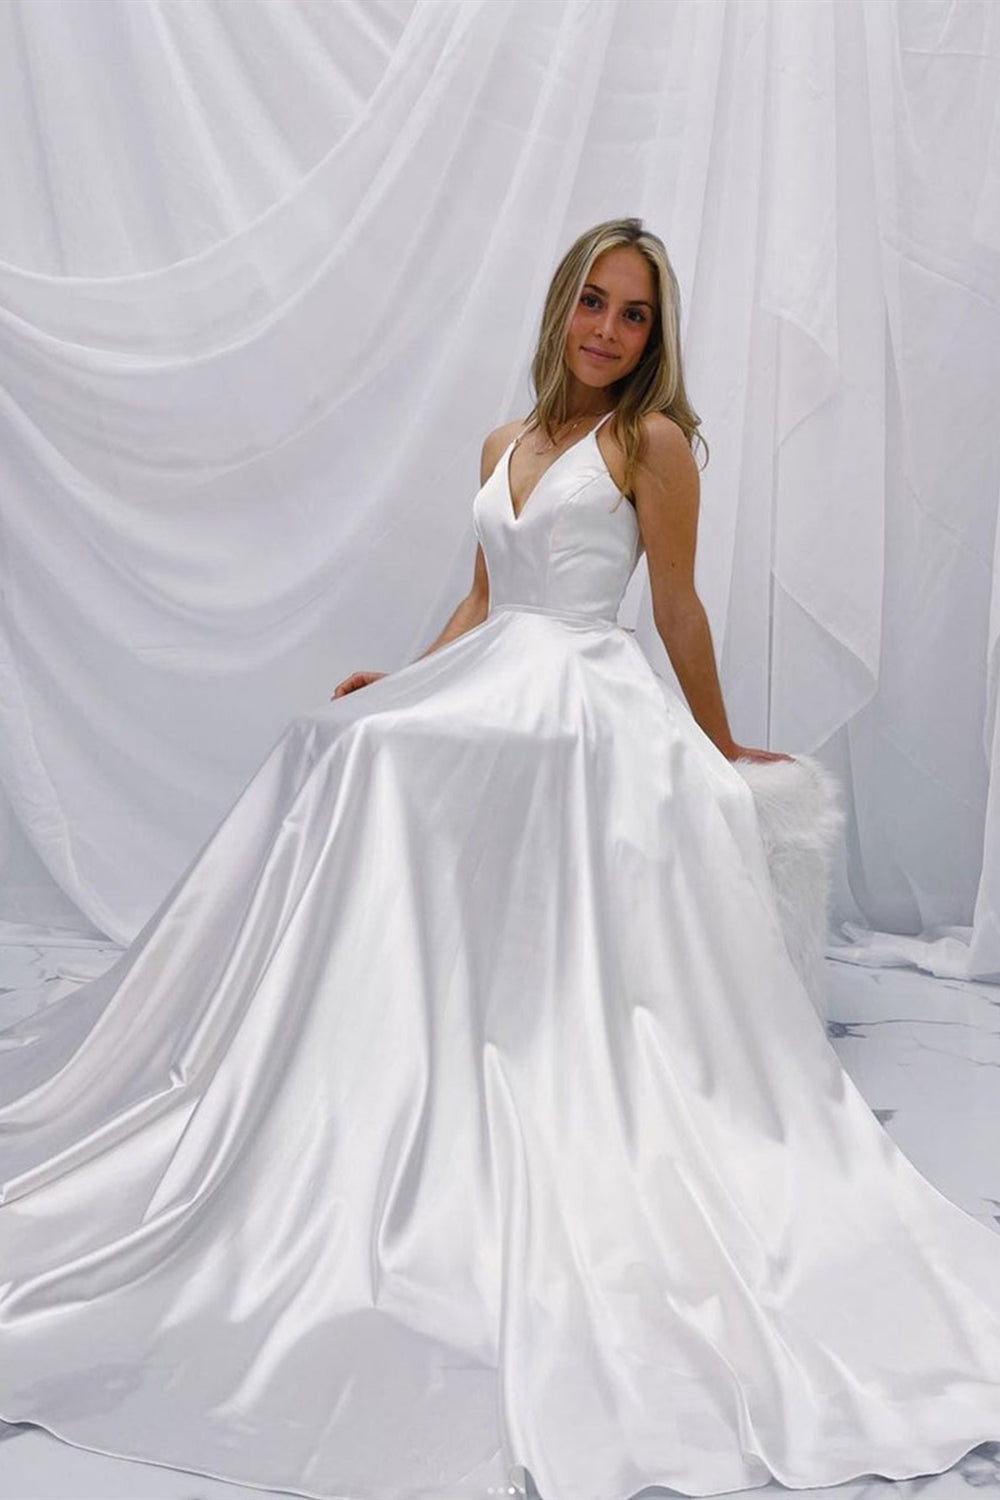 Simple V Neck Open Back White Satin Long Prom Dresses, V Neck White Formal Graduation Evening Dresses